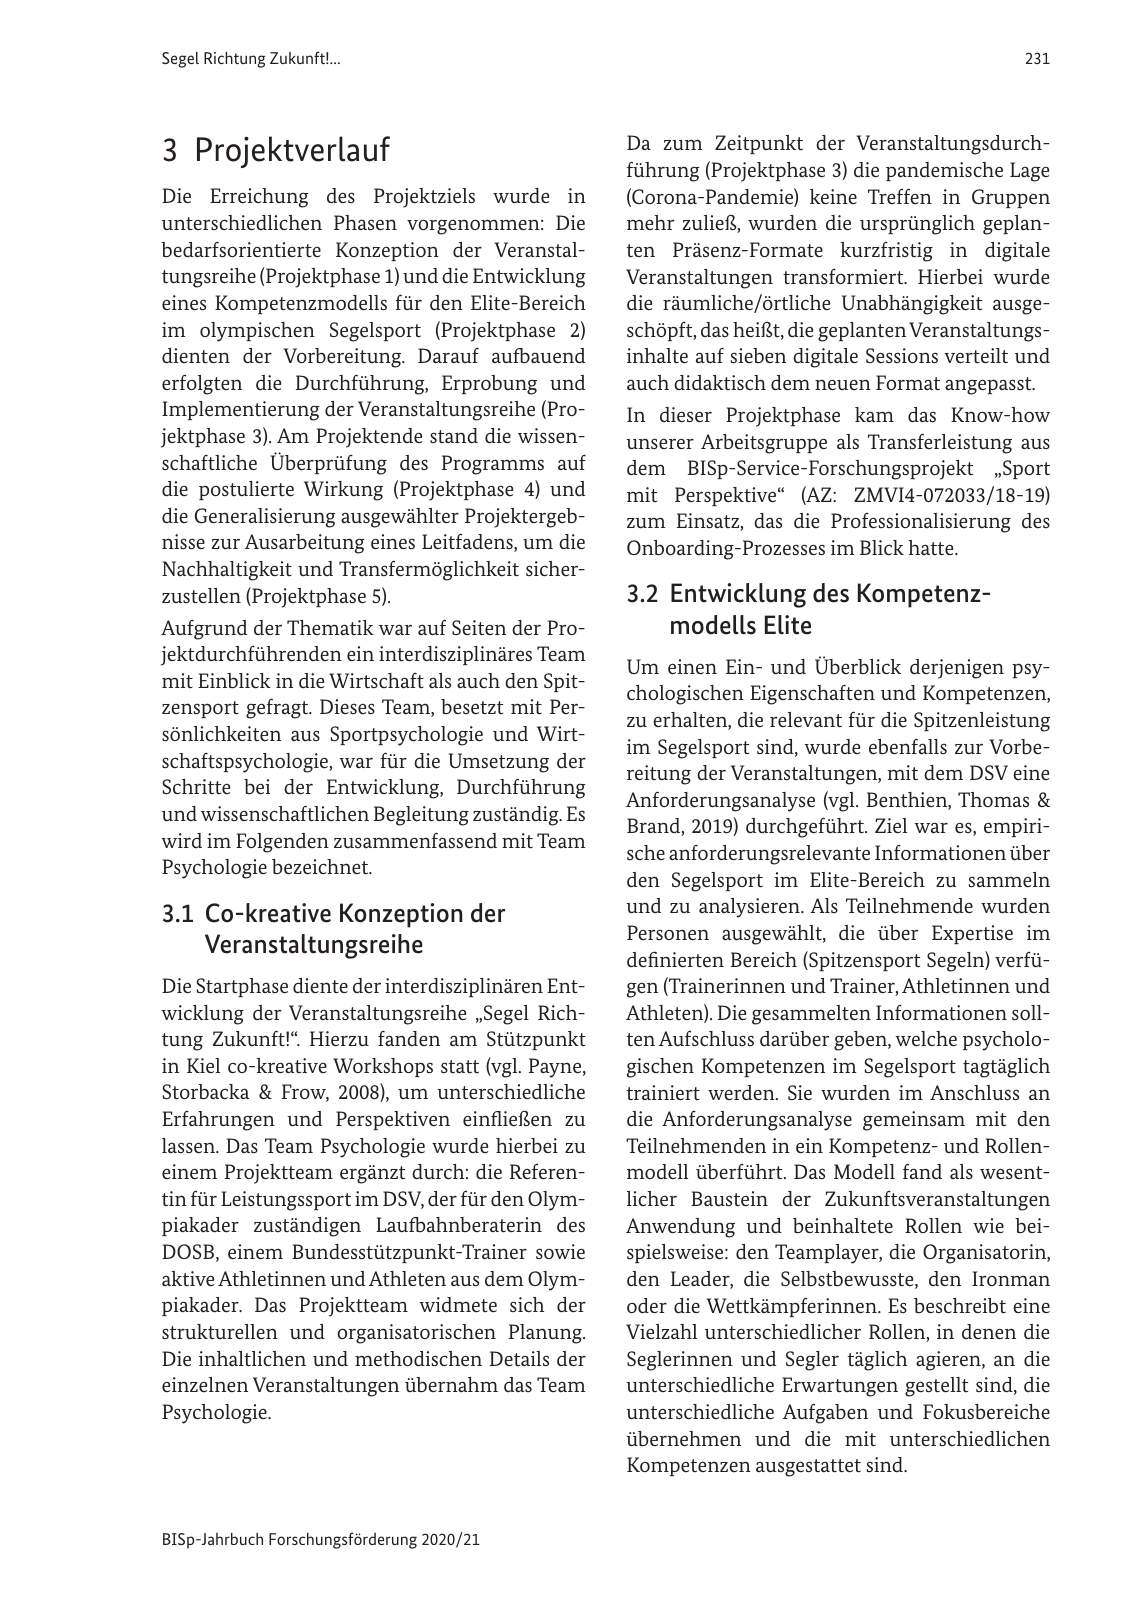 Vorschau BISp-Jahrbuch 2020/21 Seite 233